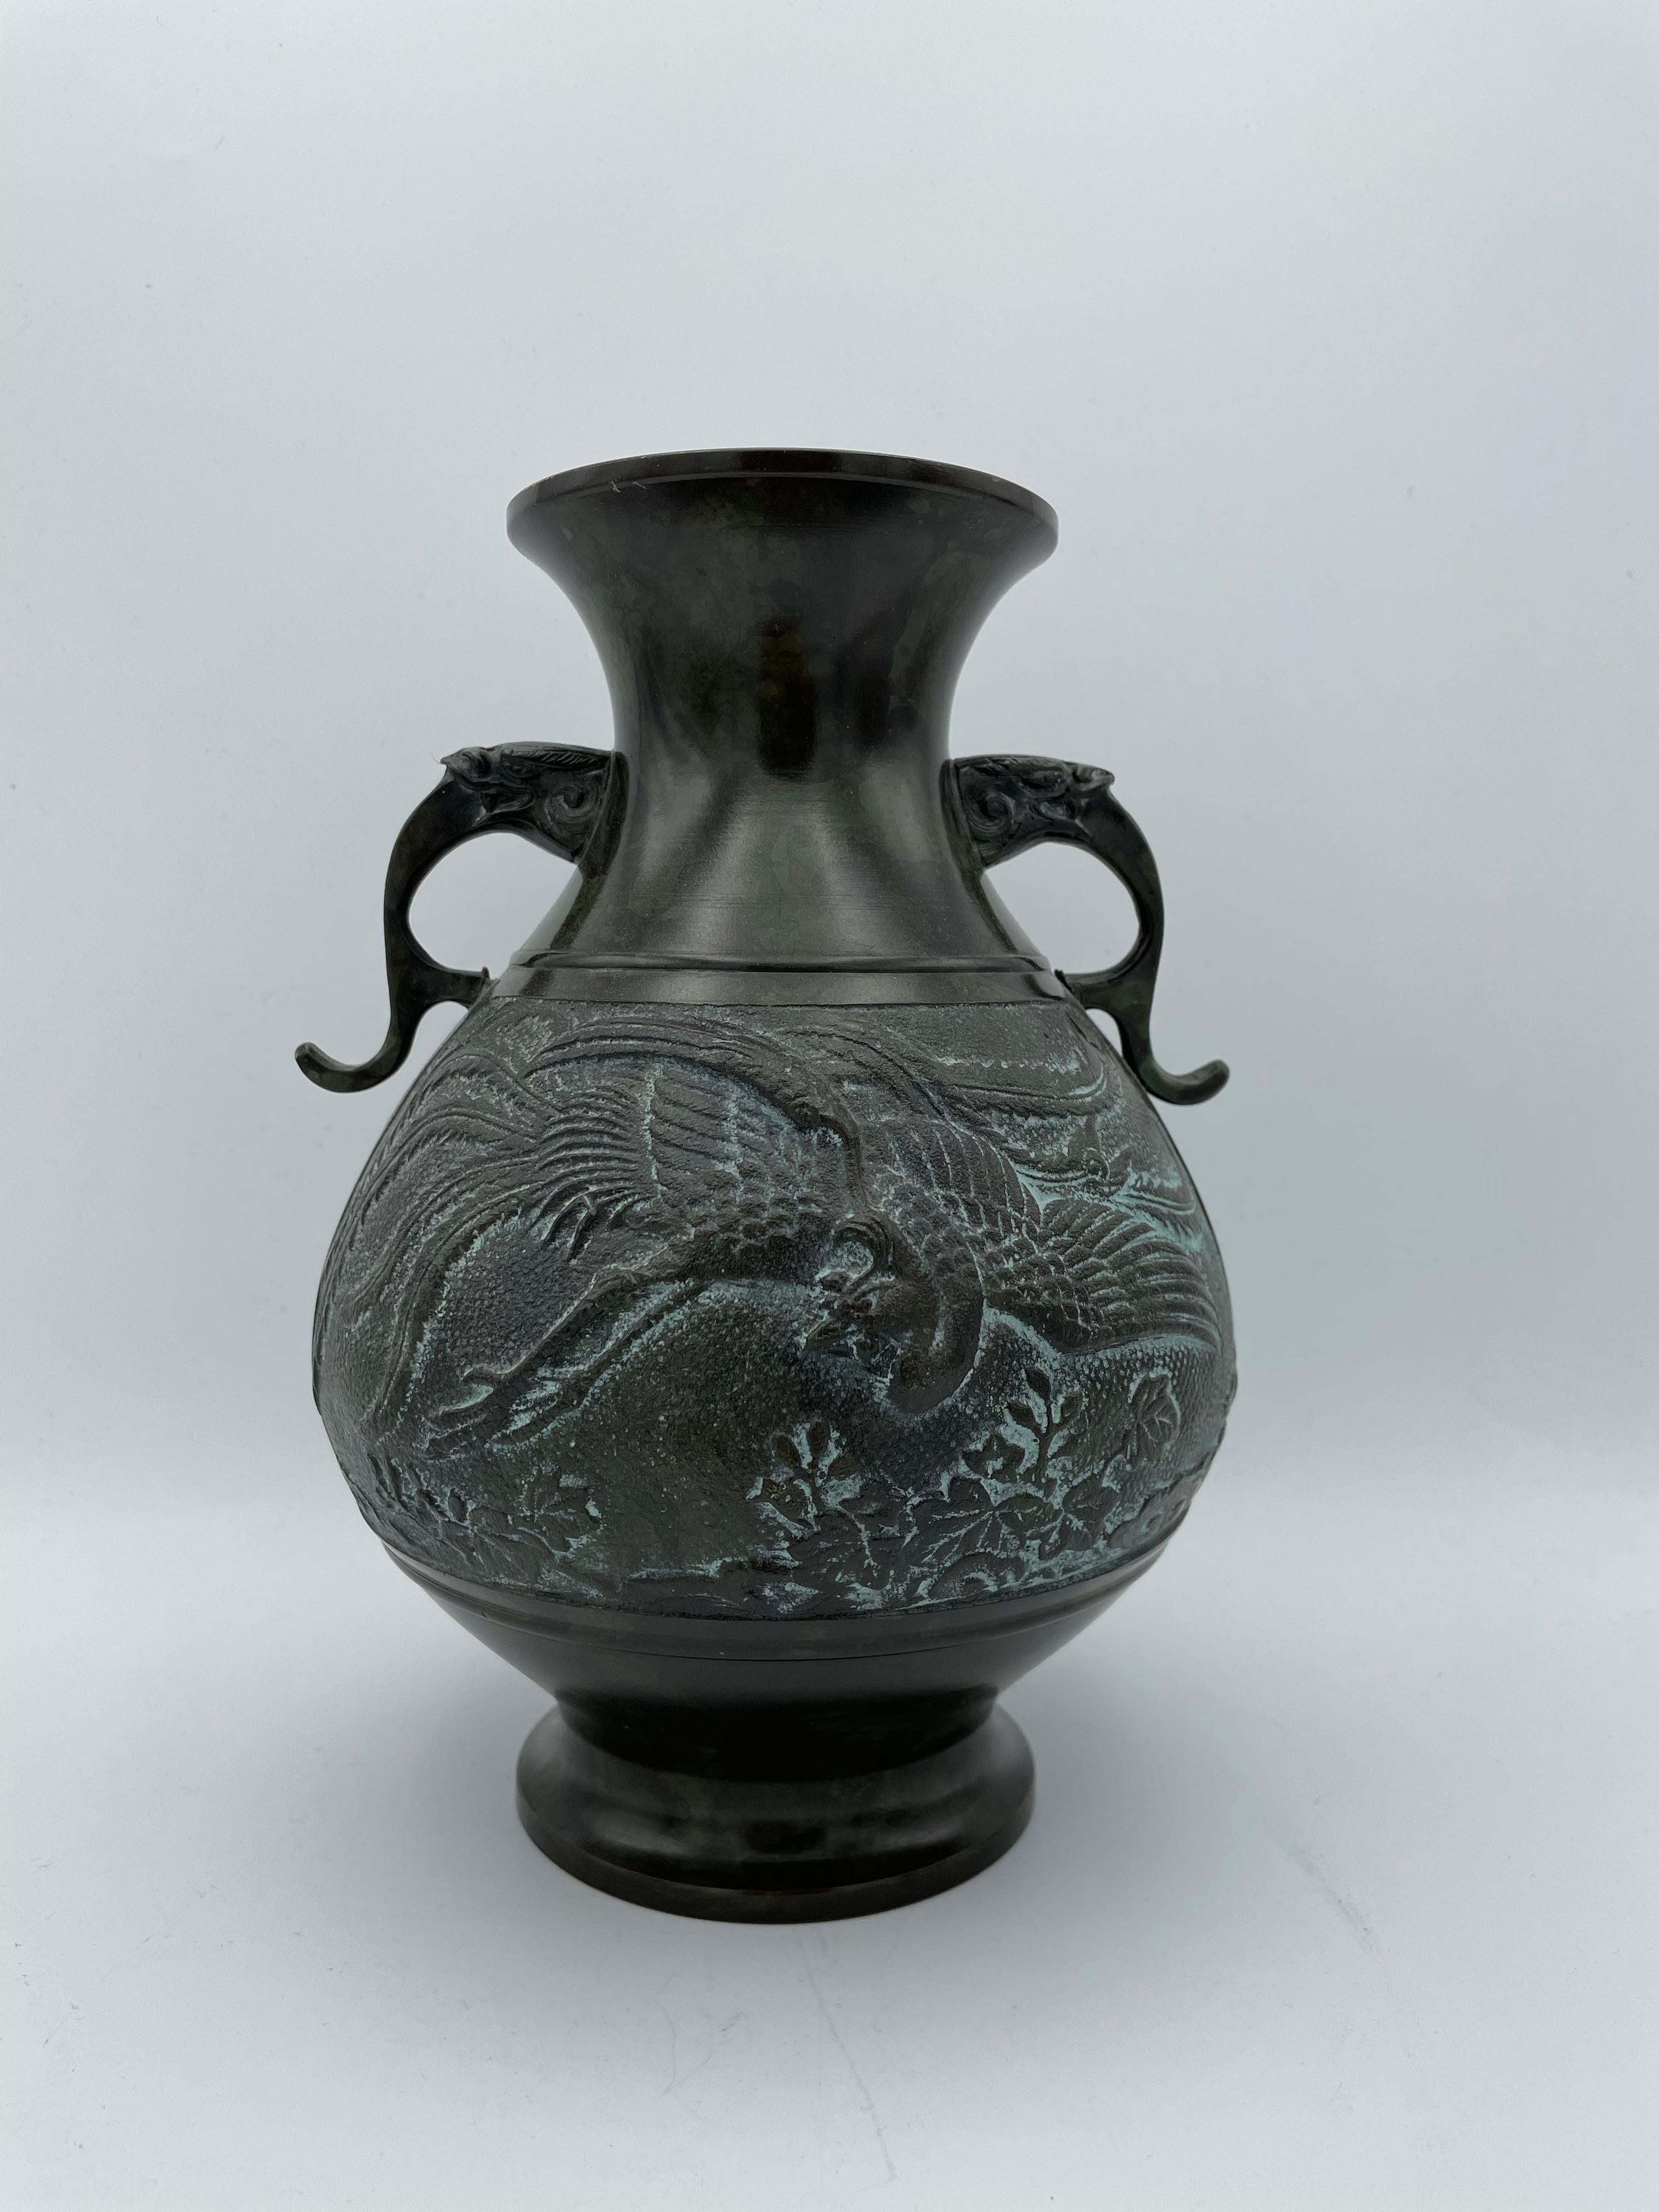 Il s'agit d'un ancien vase à fleurs en bronze Takaoka. 
Il a été fabriqué dans les années 1930, au début de l'ère Showa, dans la ville de Takaoka (préfecture de Toyama, Japon).

Dimensions :
16 x 16 x H22 cm.